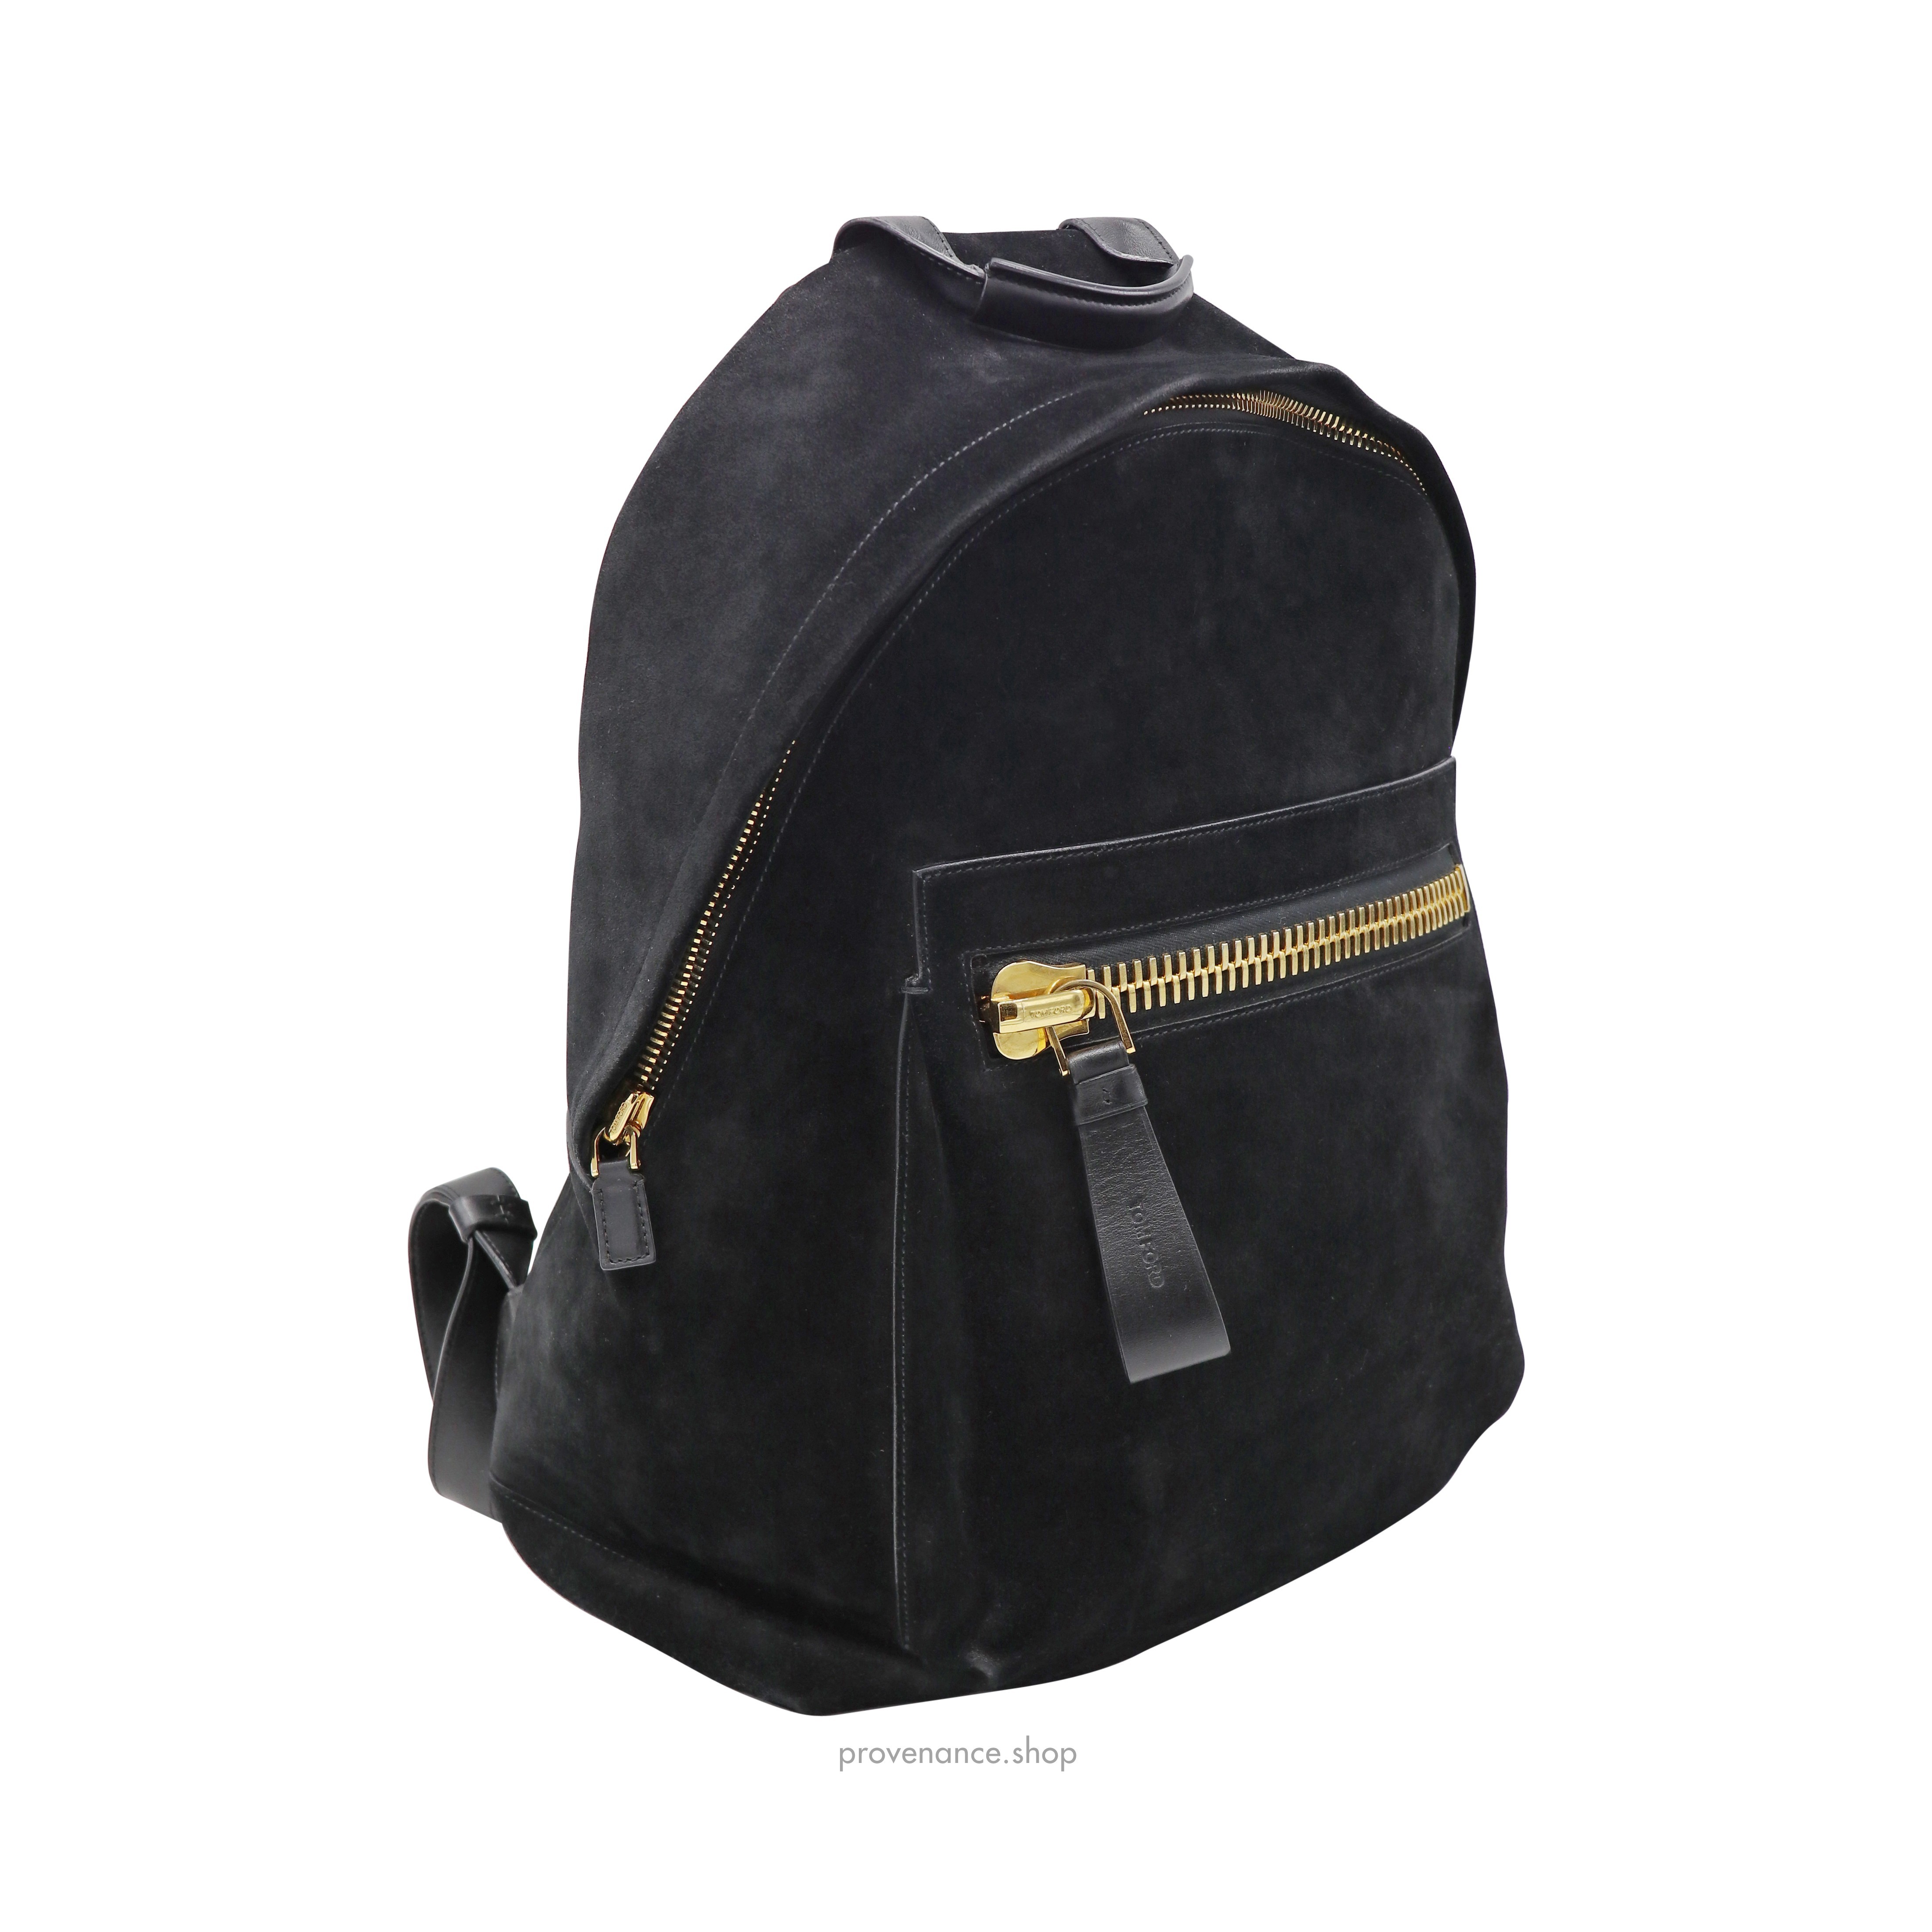 Buckley Backpack Bag - Black Suede - 4